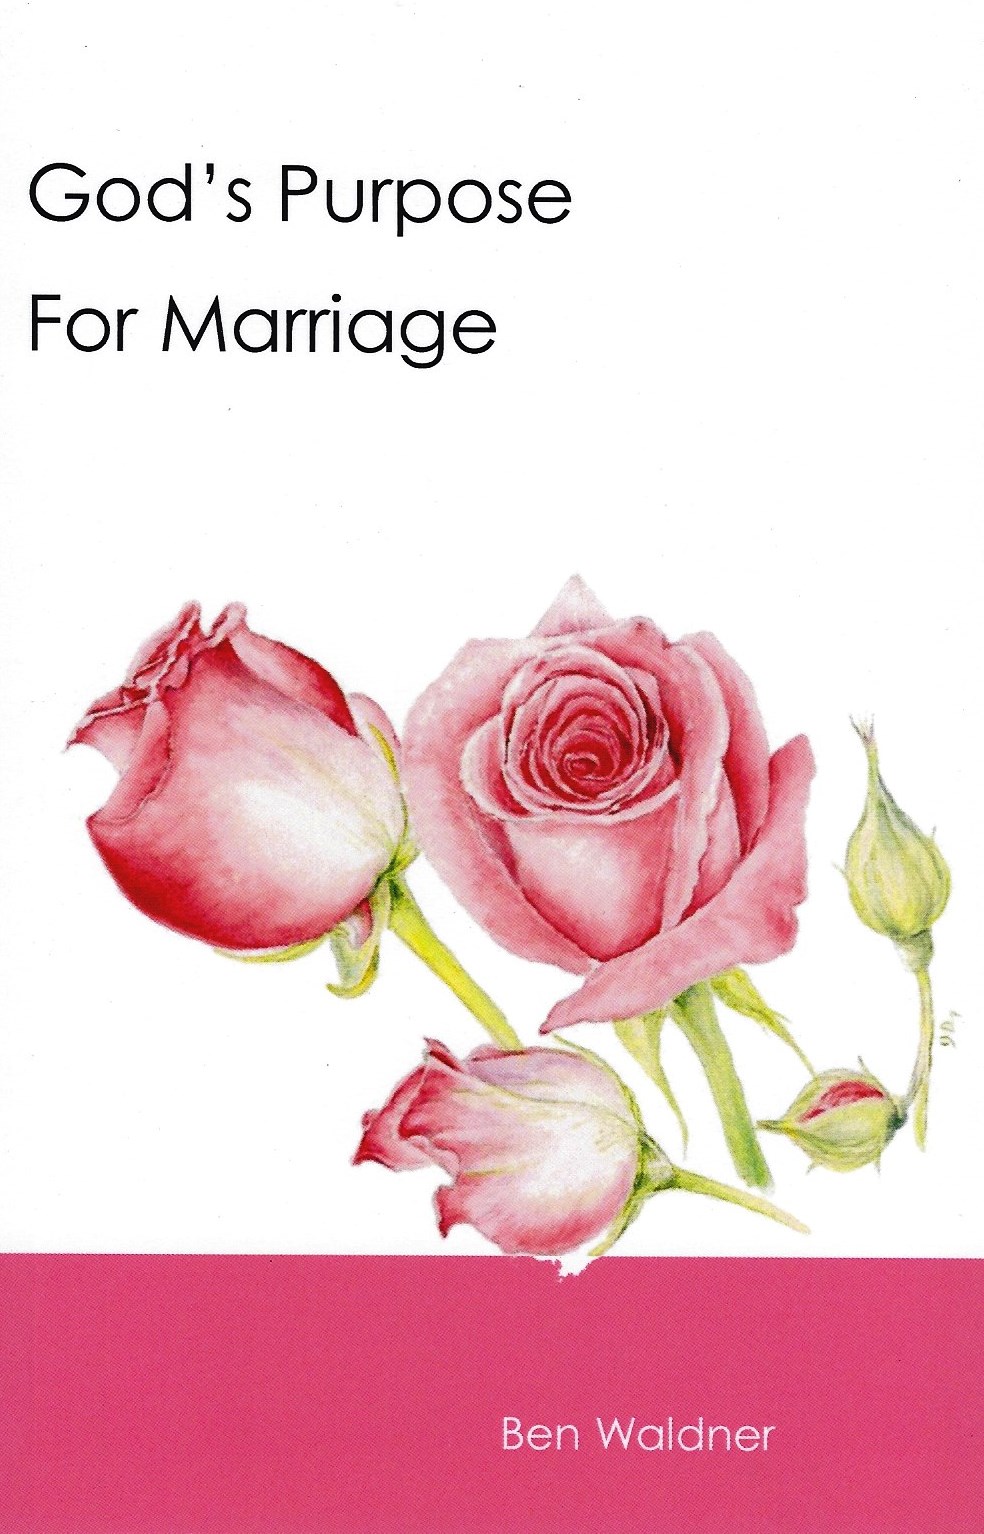 2019 MARRIAGE ENRICHMENT SEMINAR BOOKLETS COMPLETE SET